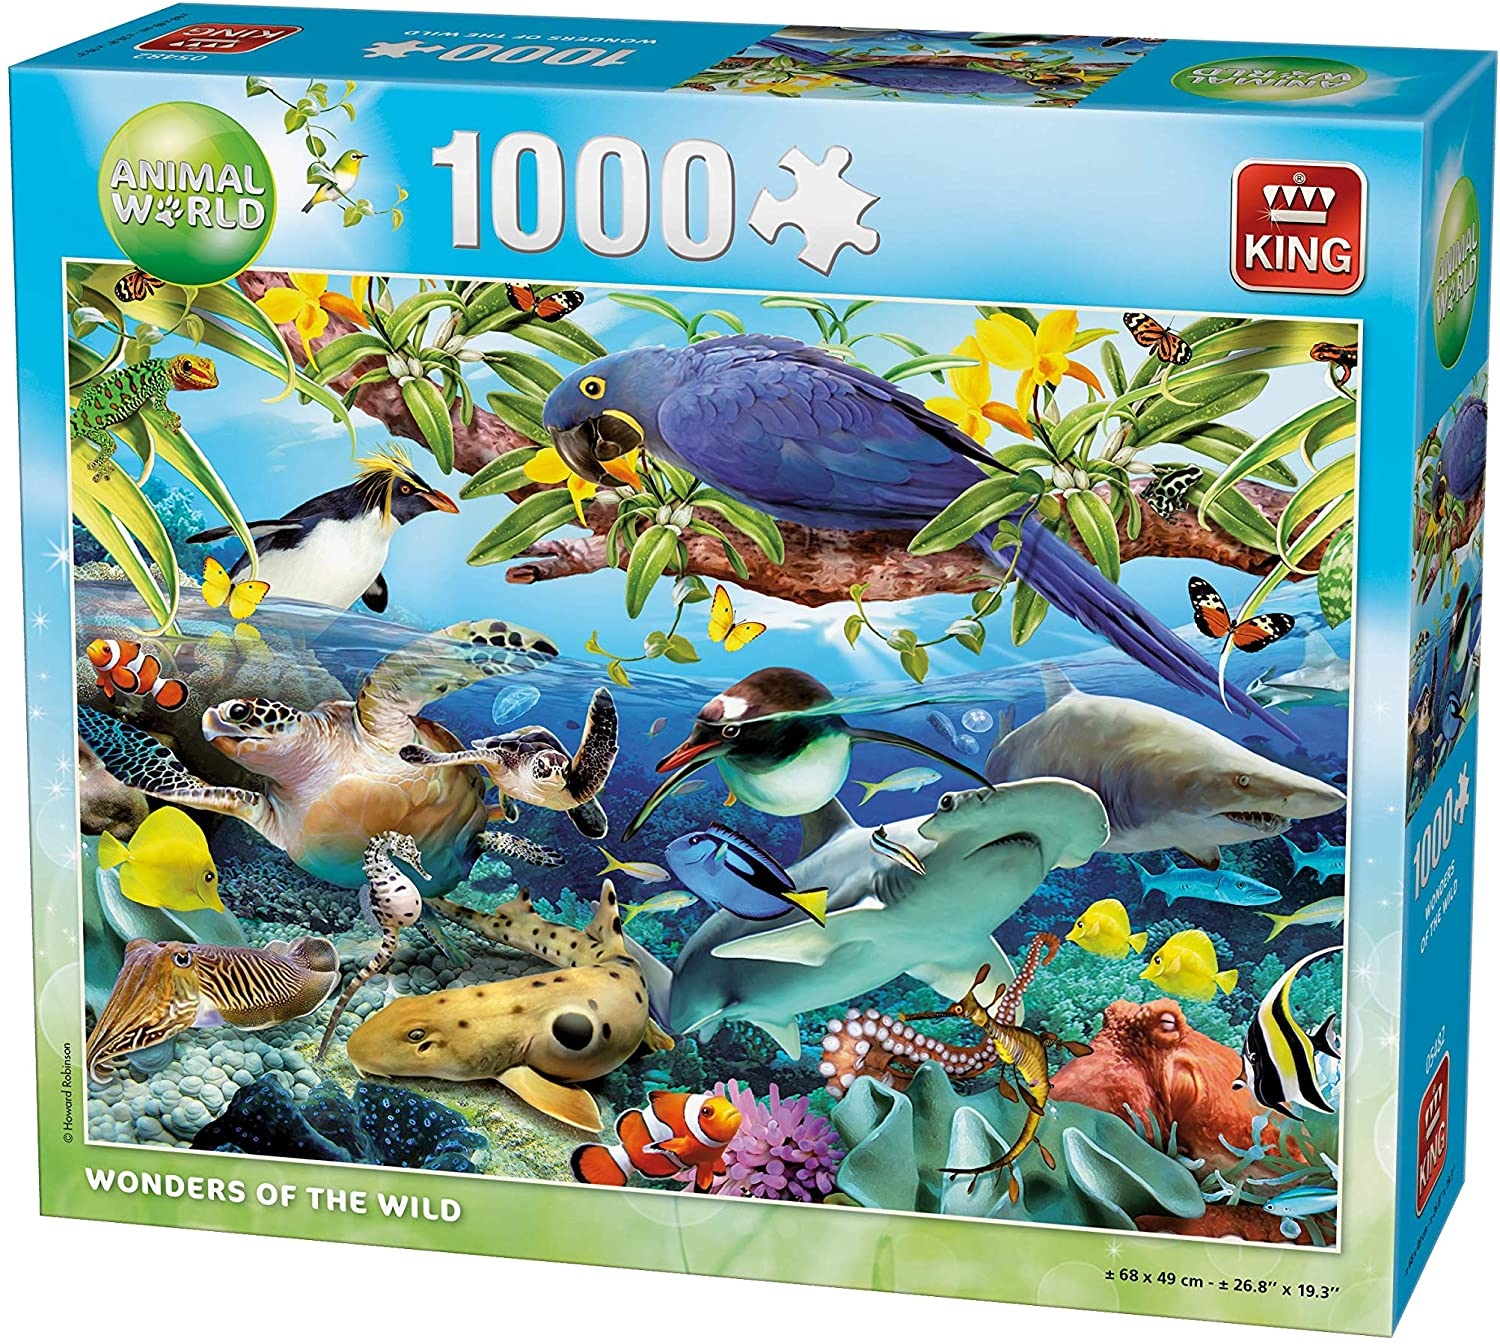 1000 piece jigsaw puzzle animaux et oiseaux Merveilles de la nature T4Y6